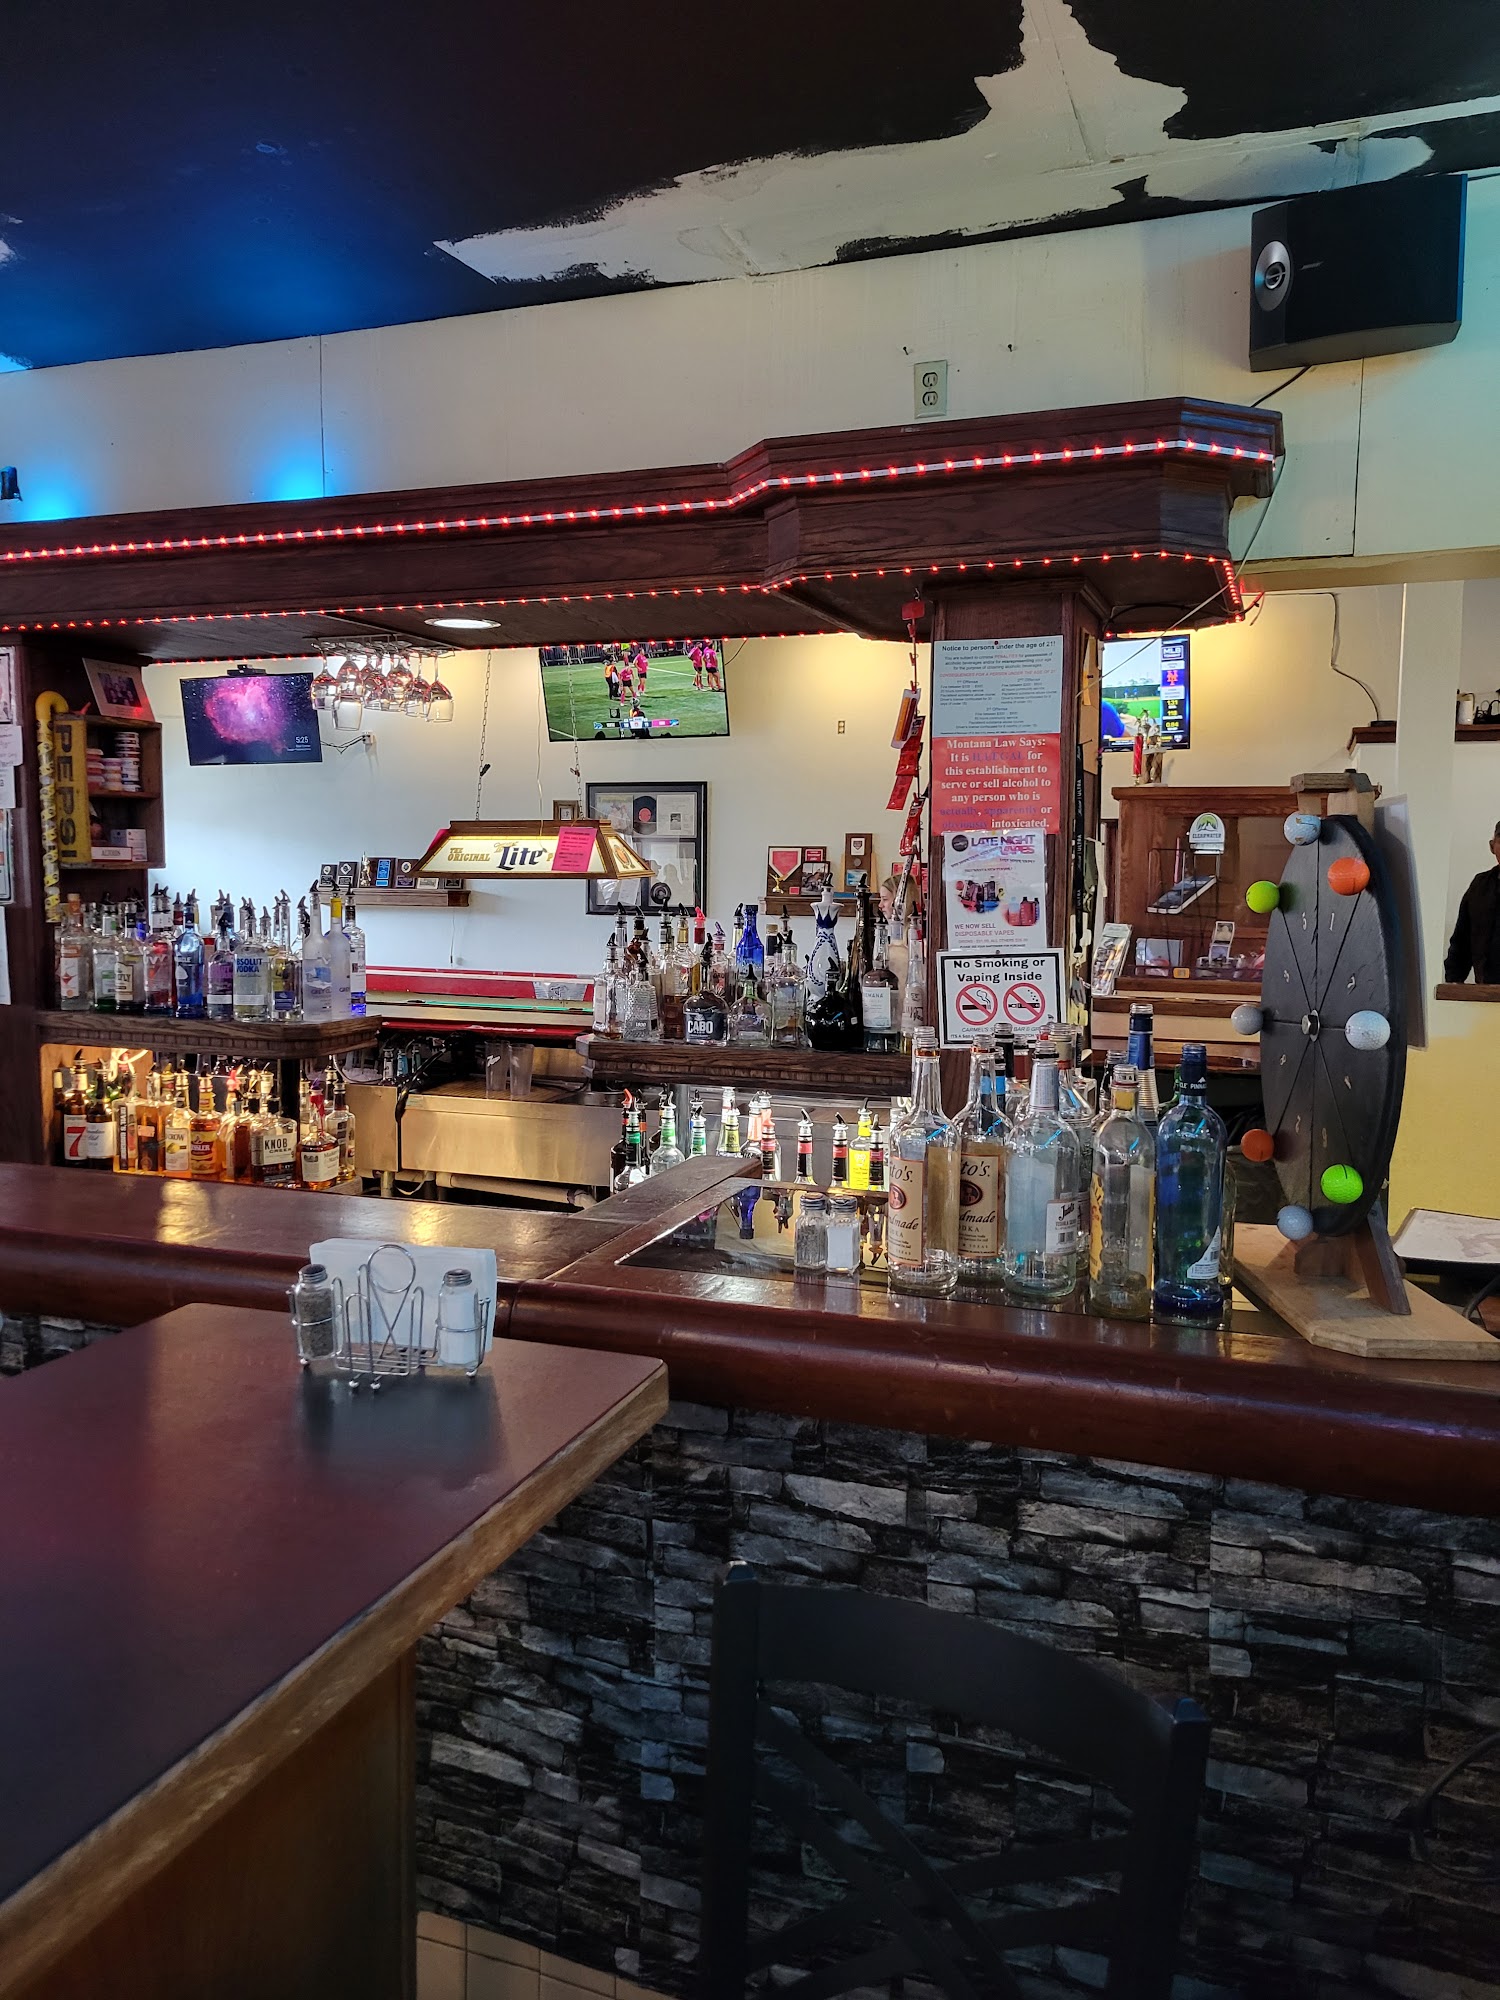 Carmel's Sports Bar & Grill